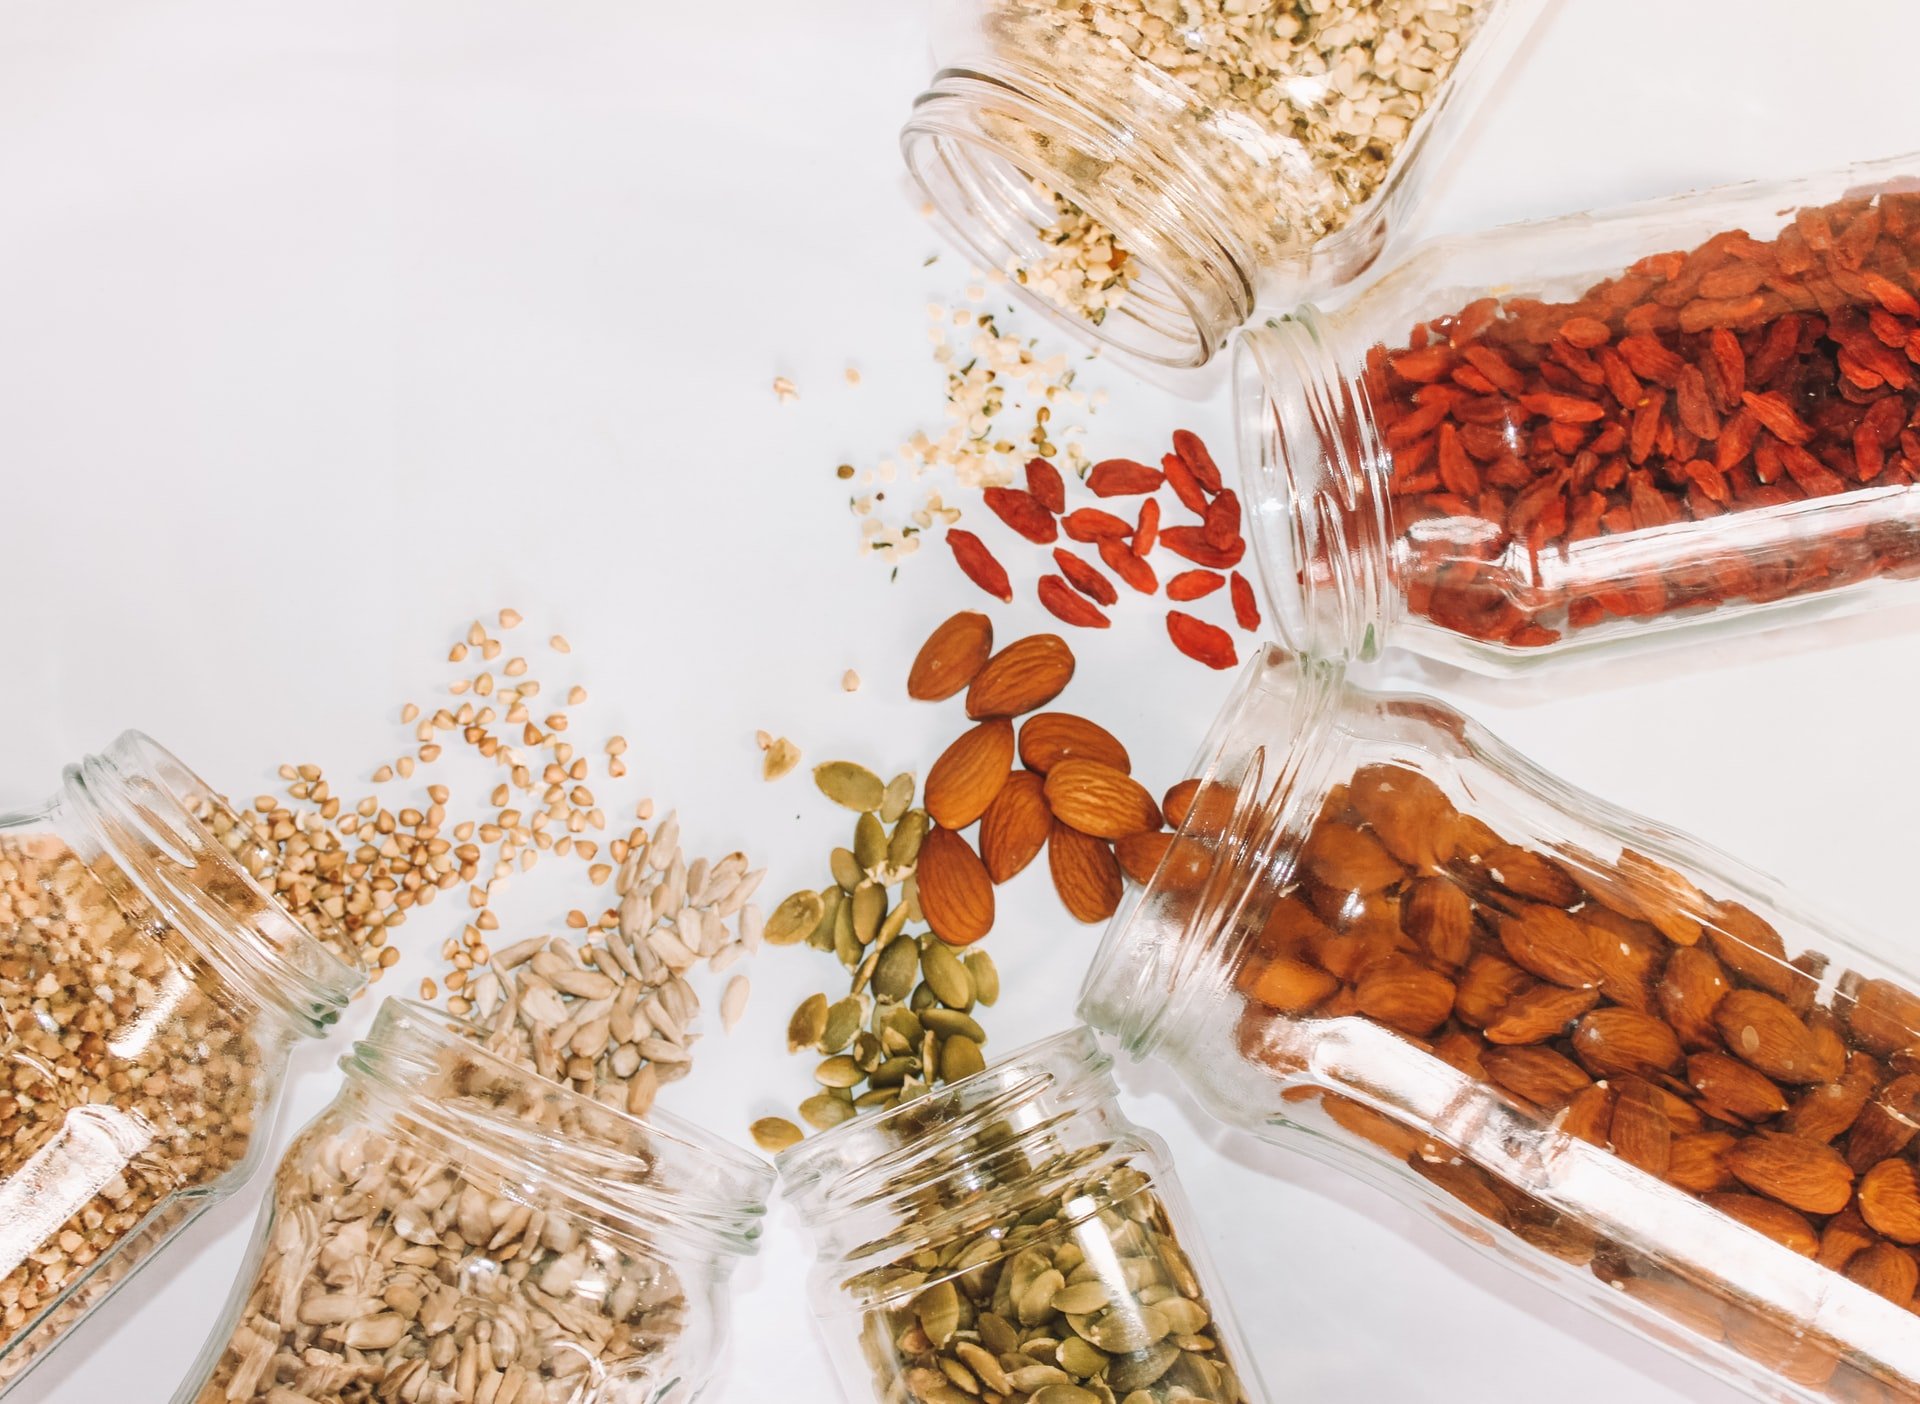 Comment manger des graines ? Les réponses à vos questions